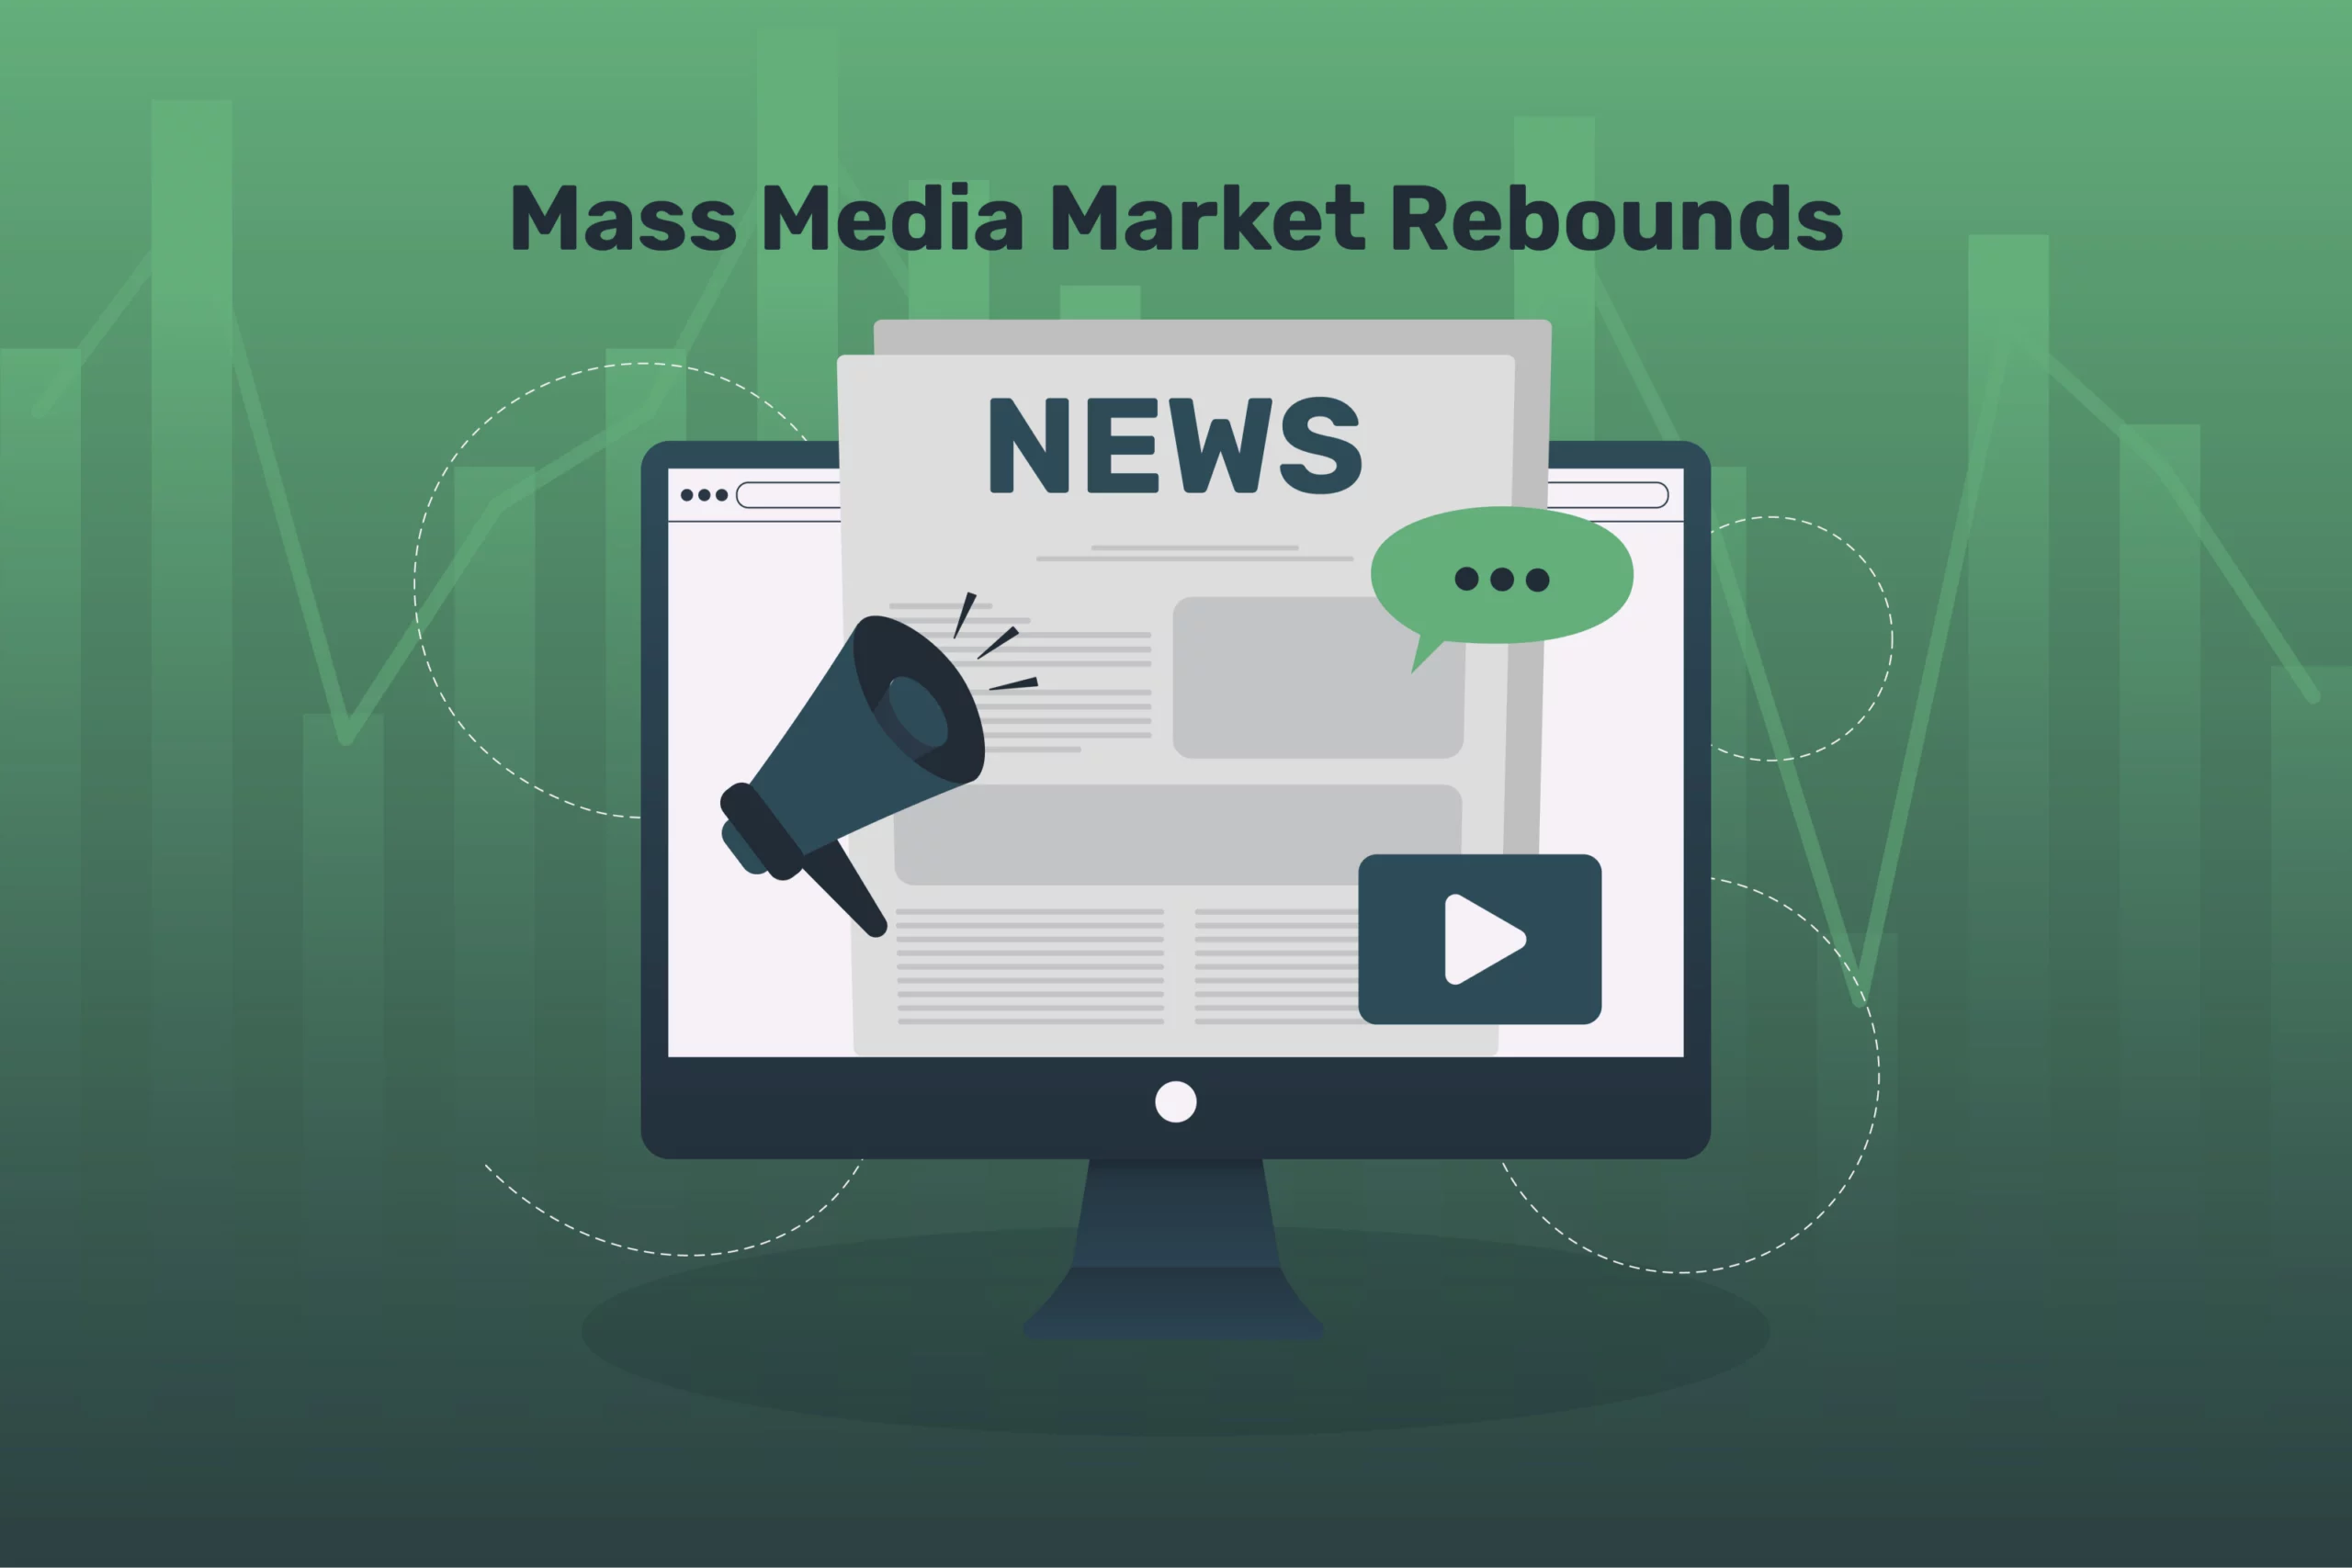 Mass Media Market Rebounds